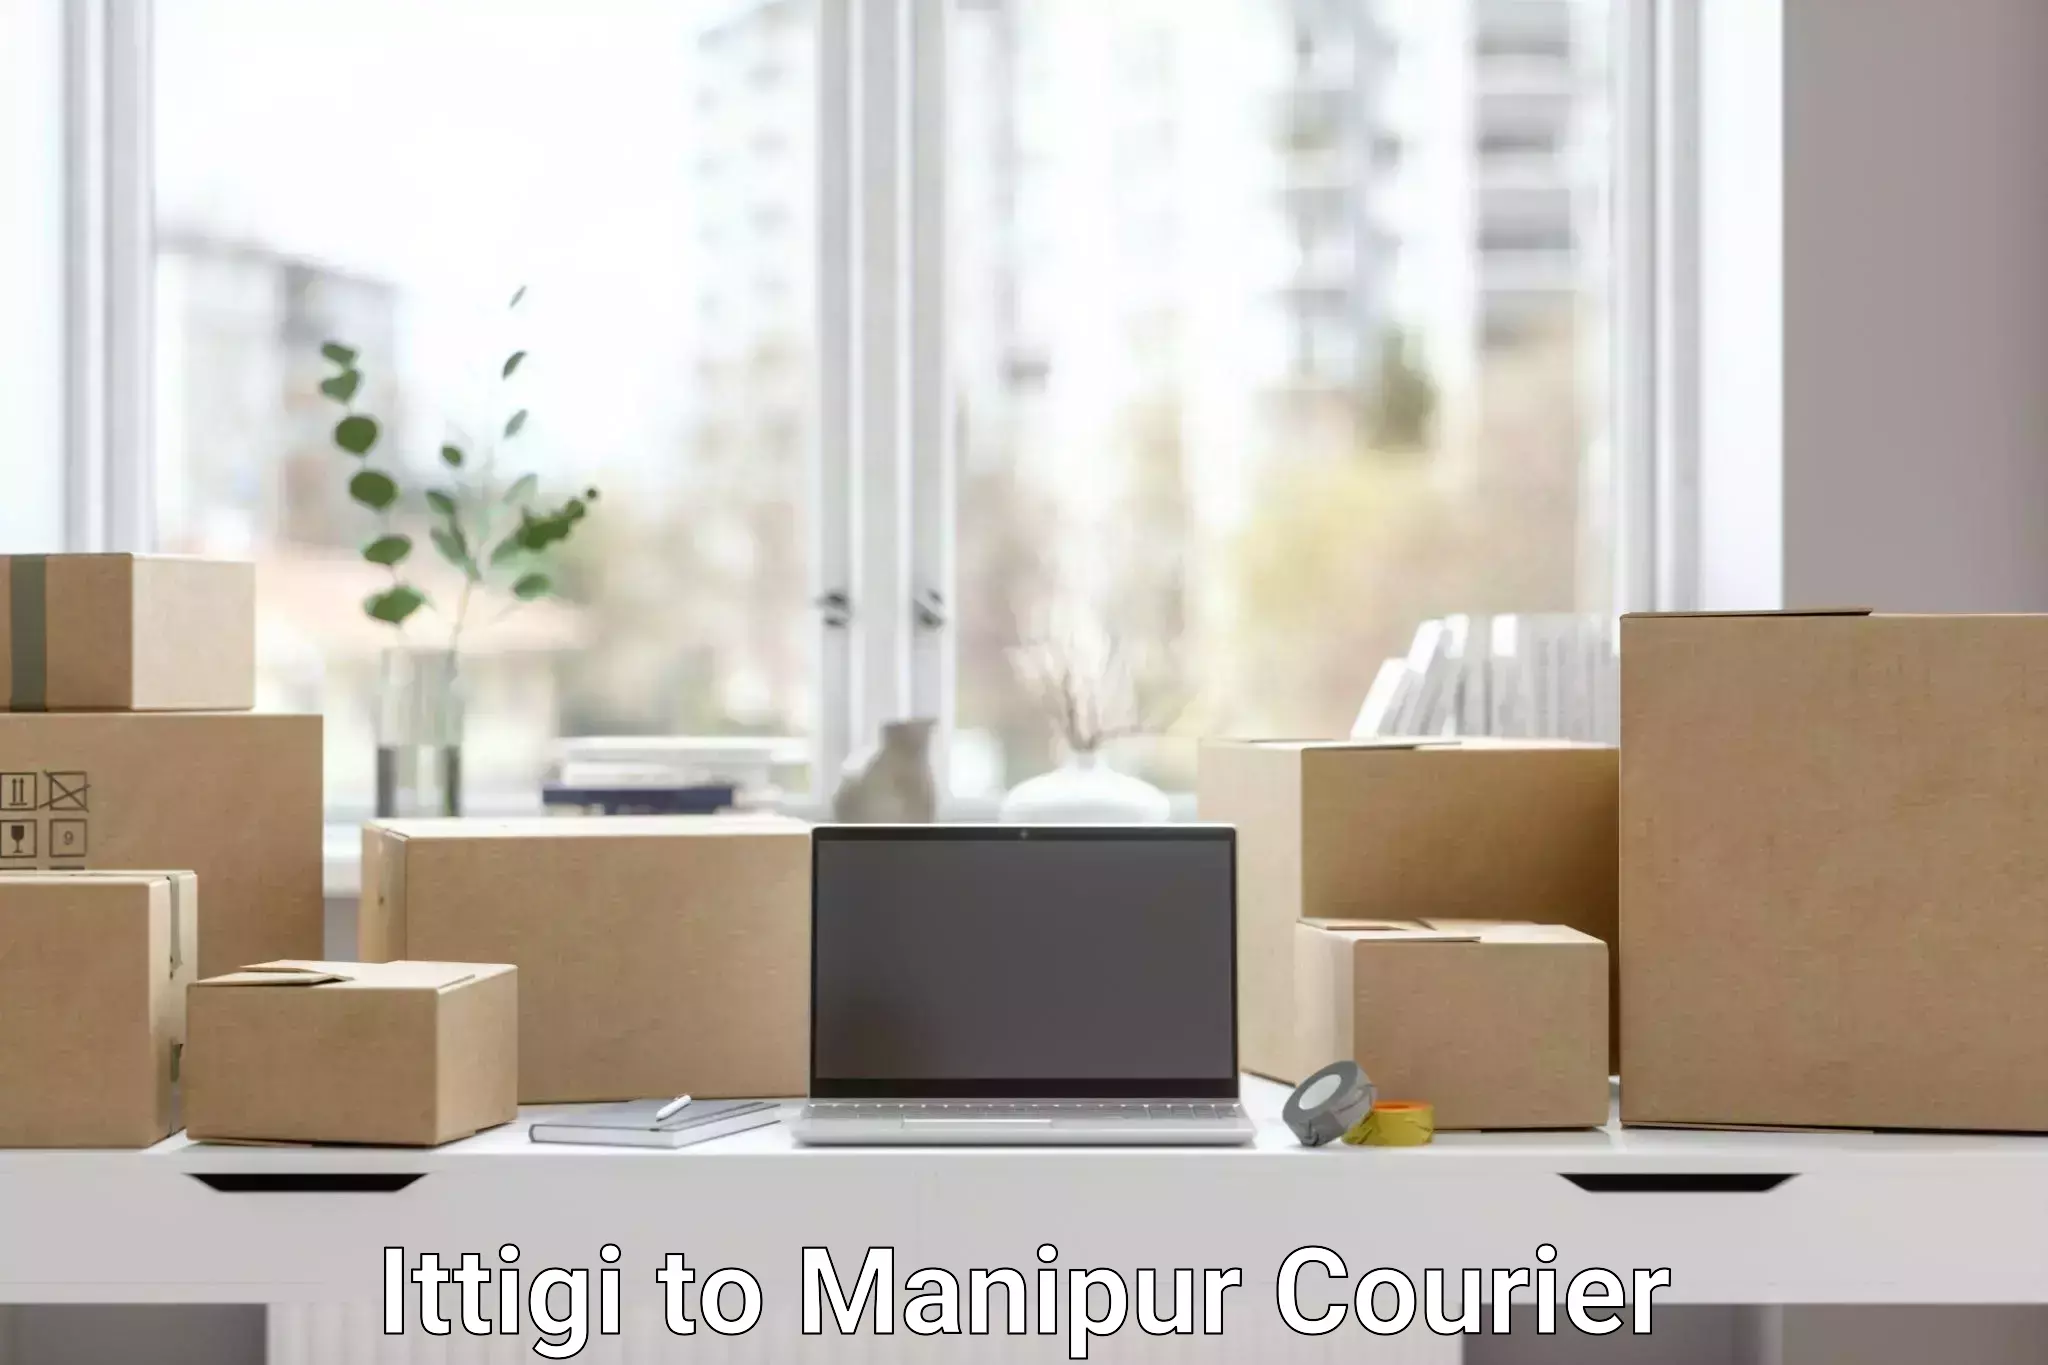 Same-day delivery solutions Ittigi to Kanti